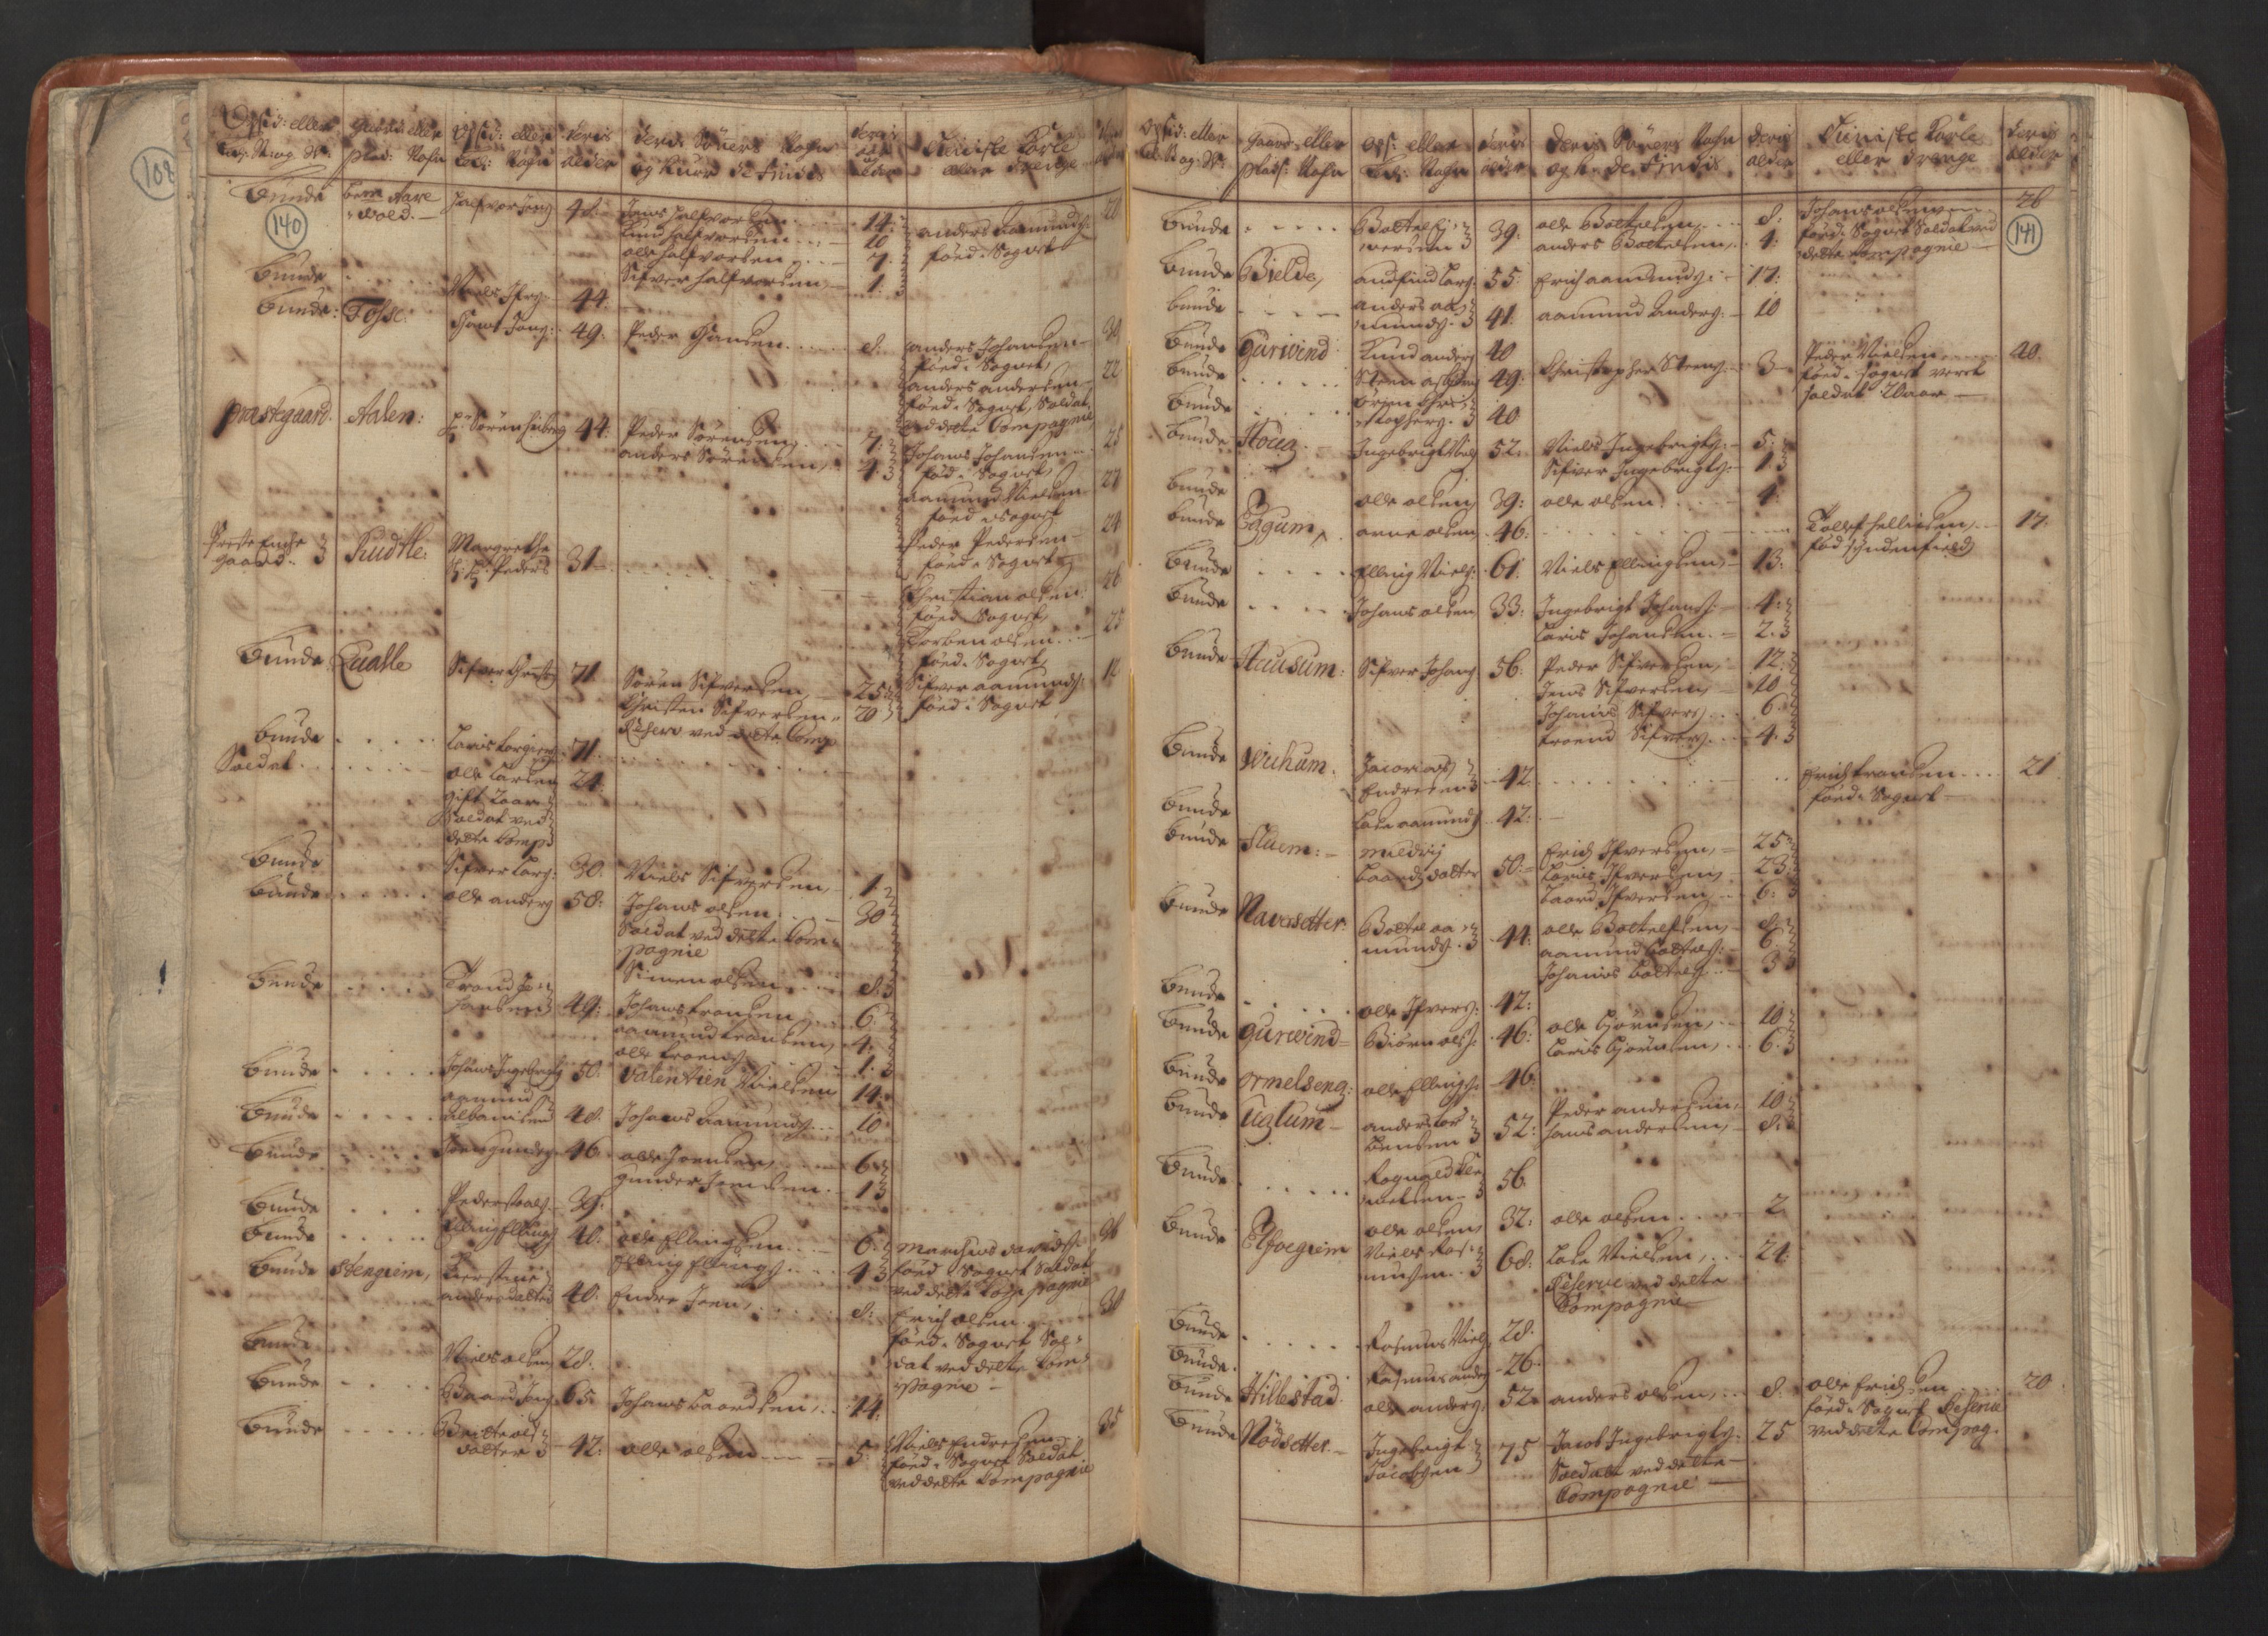 RA, Manntallet 1701, nr. 8: Ytre Sogn fogderi og Indre Sogn fogderi, 1701, s. 140-141